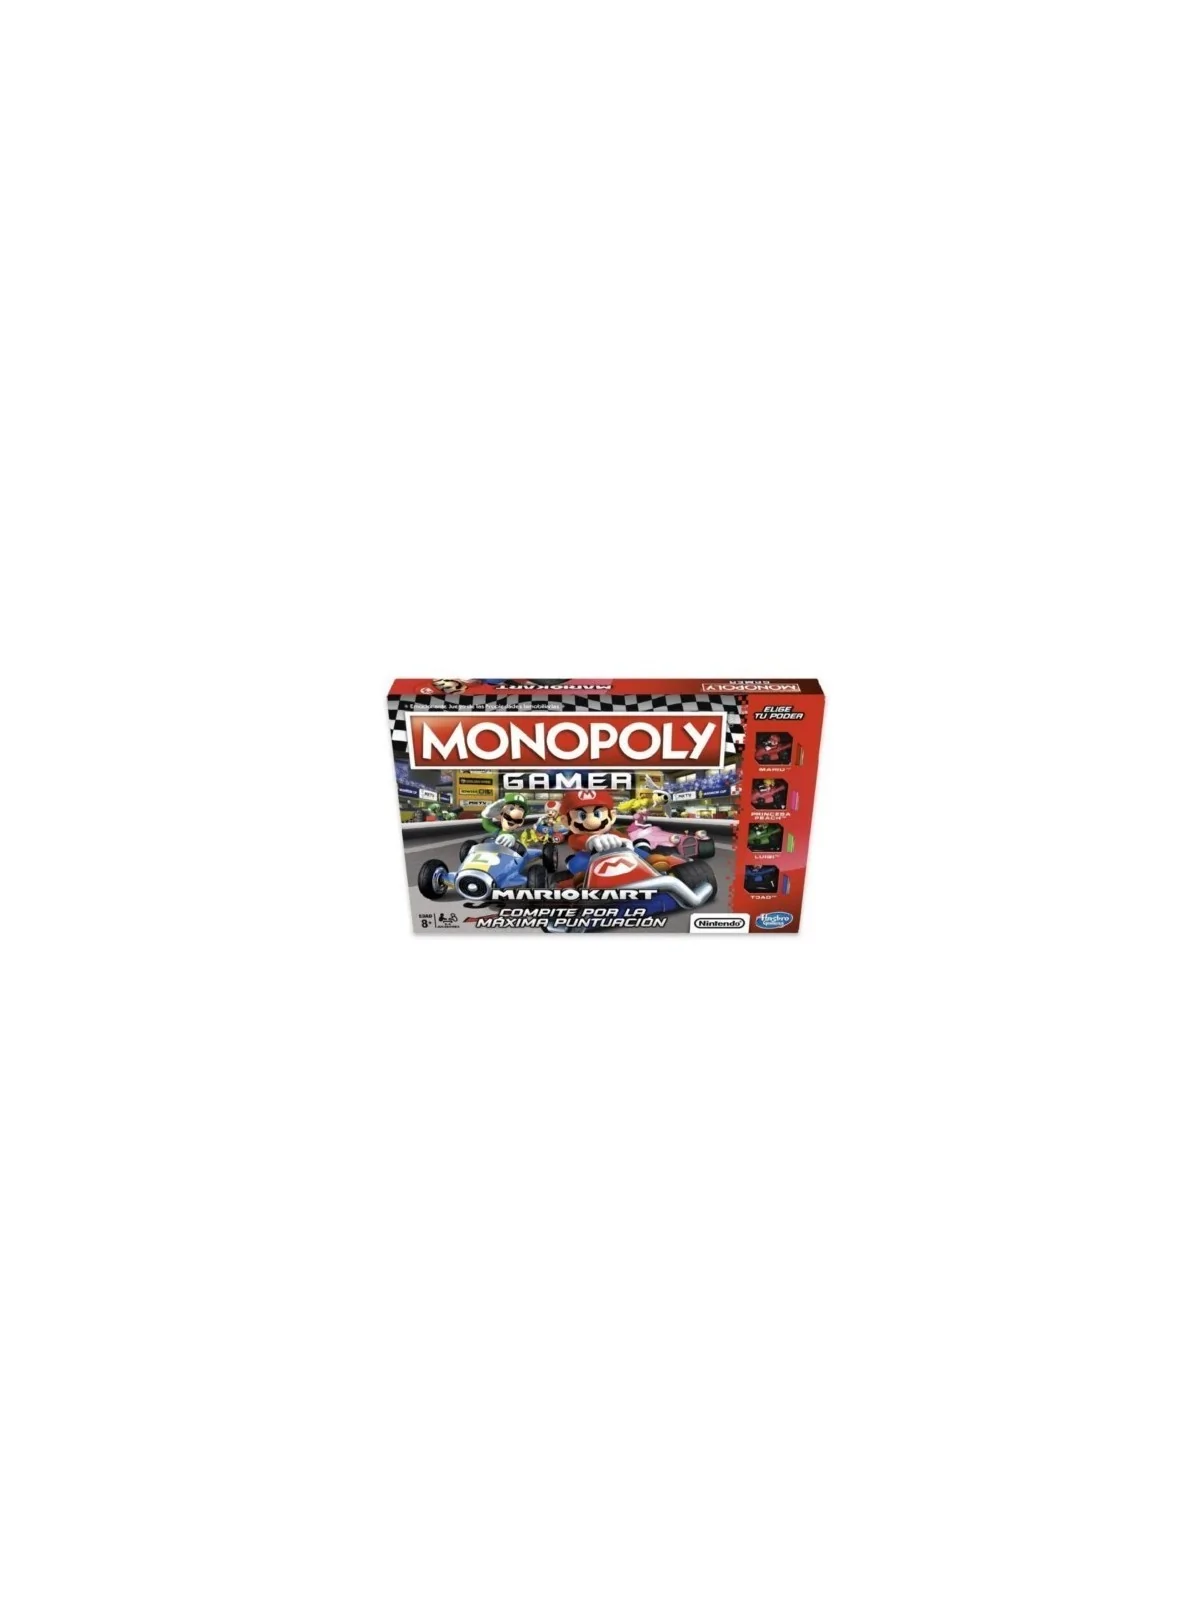 Comprar Monopoly Mario Kart barato al mejor precio 33,25 € de Hasbro